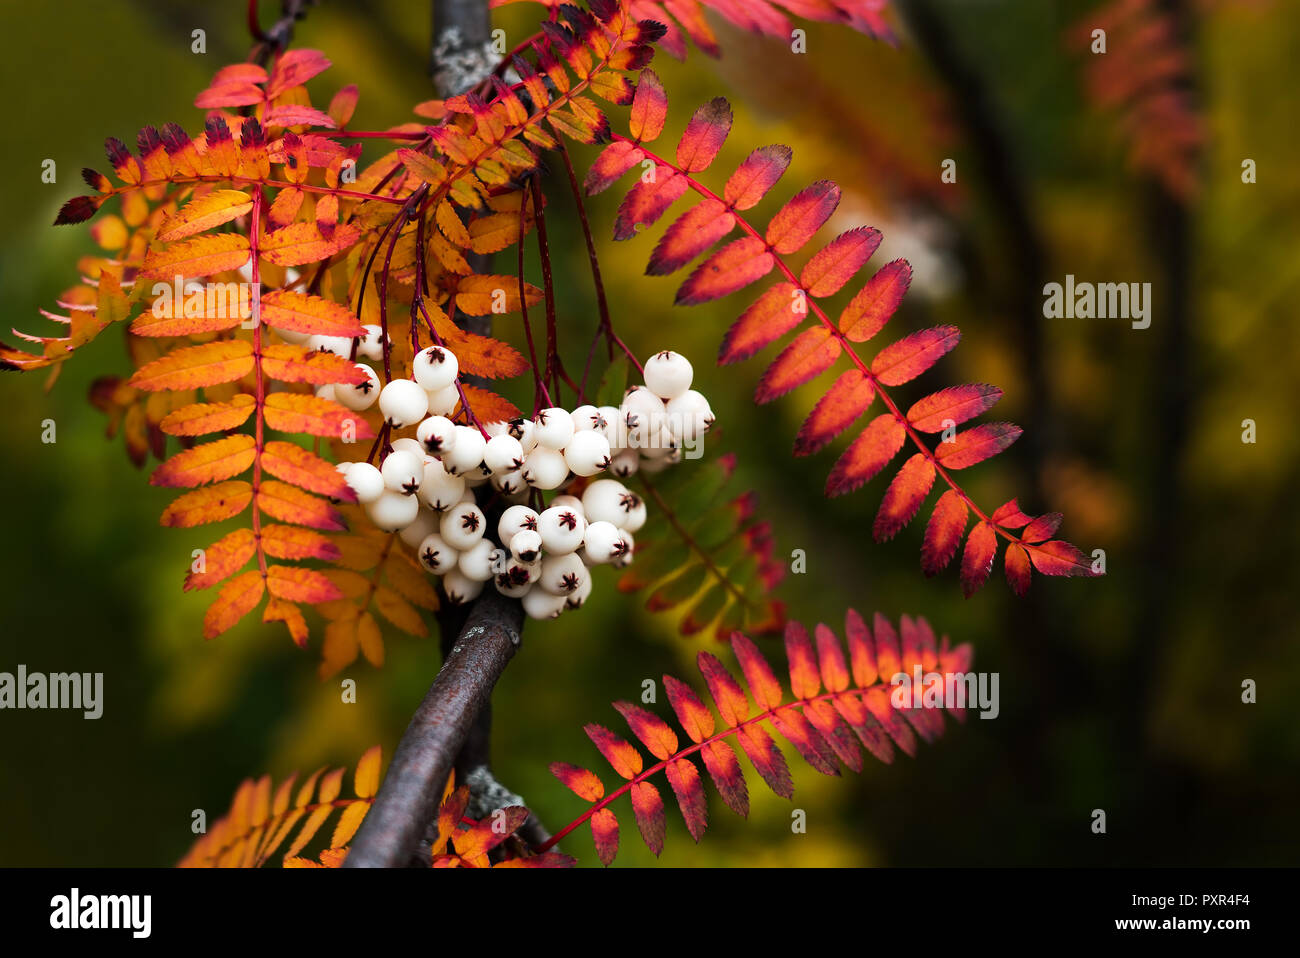 Close up di vibranti colori d'autunno esce dalla montagna di Koehne frassino bianco cinese fruttate,Rowan Sorbus koehneana, con molte bacche bianche Foto Stock